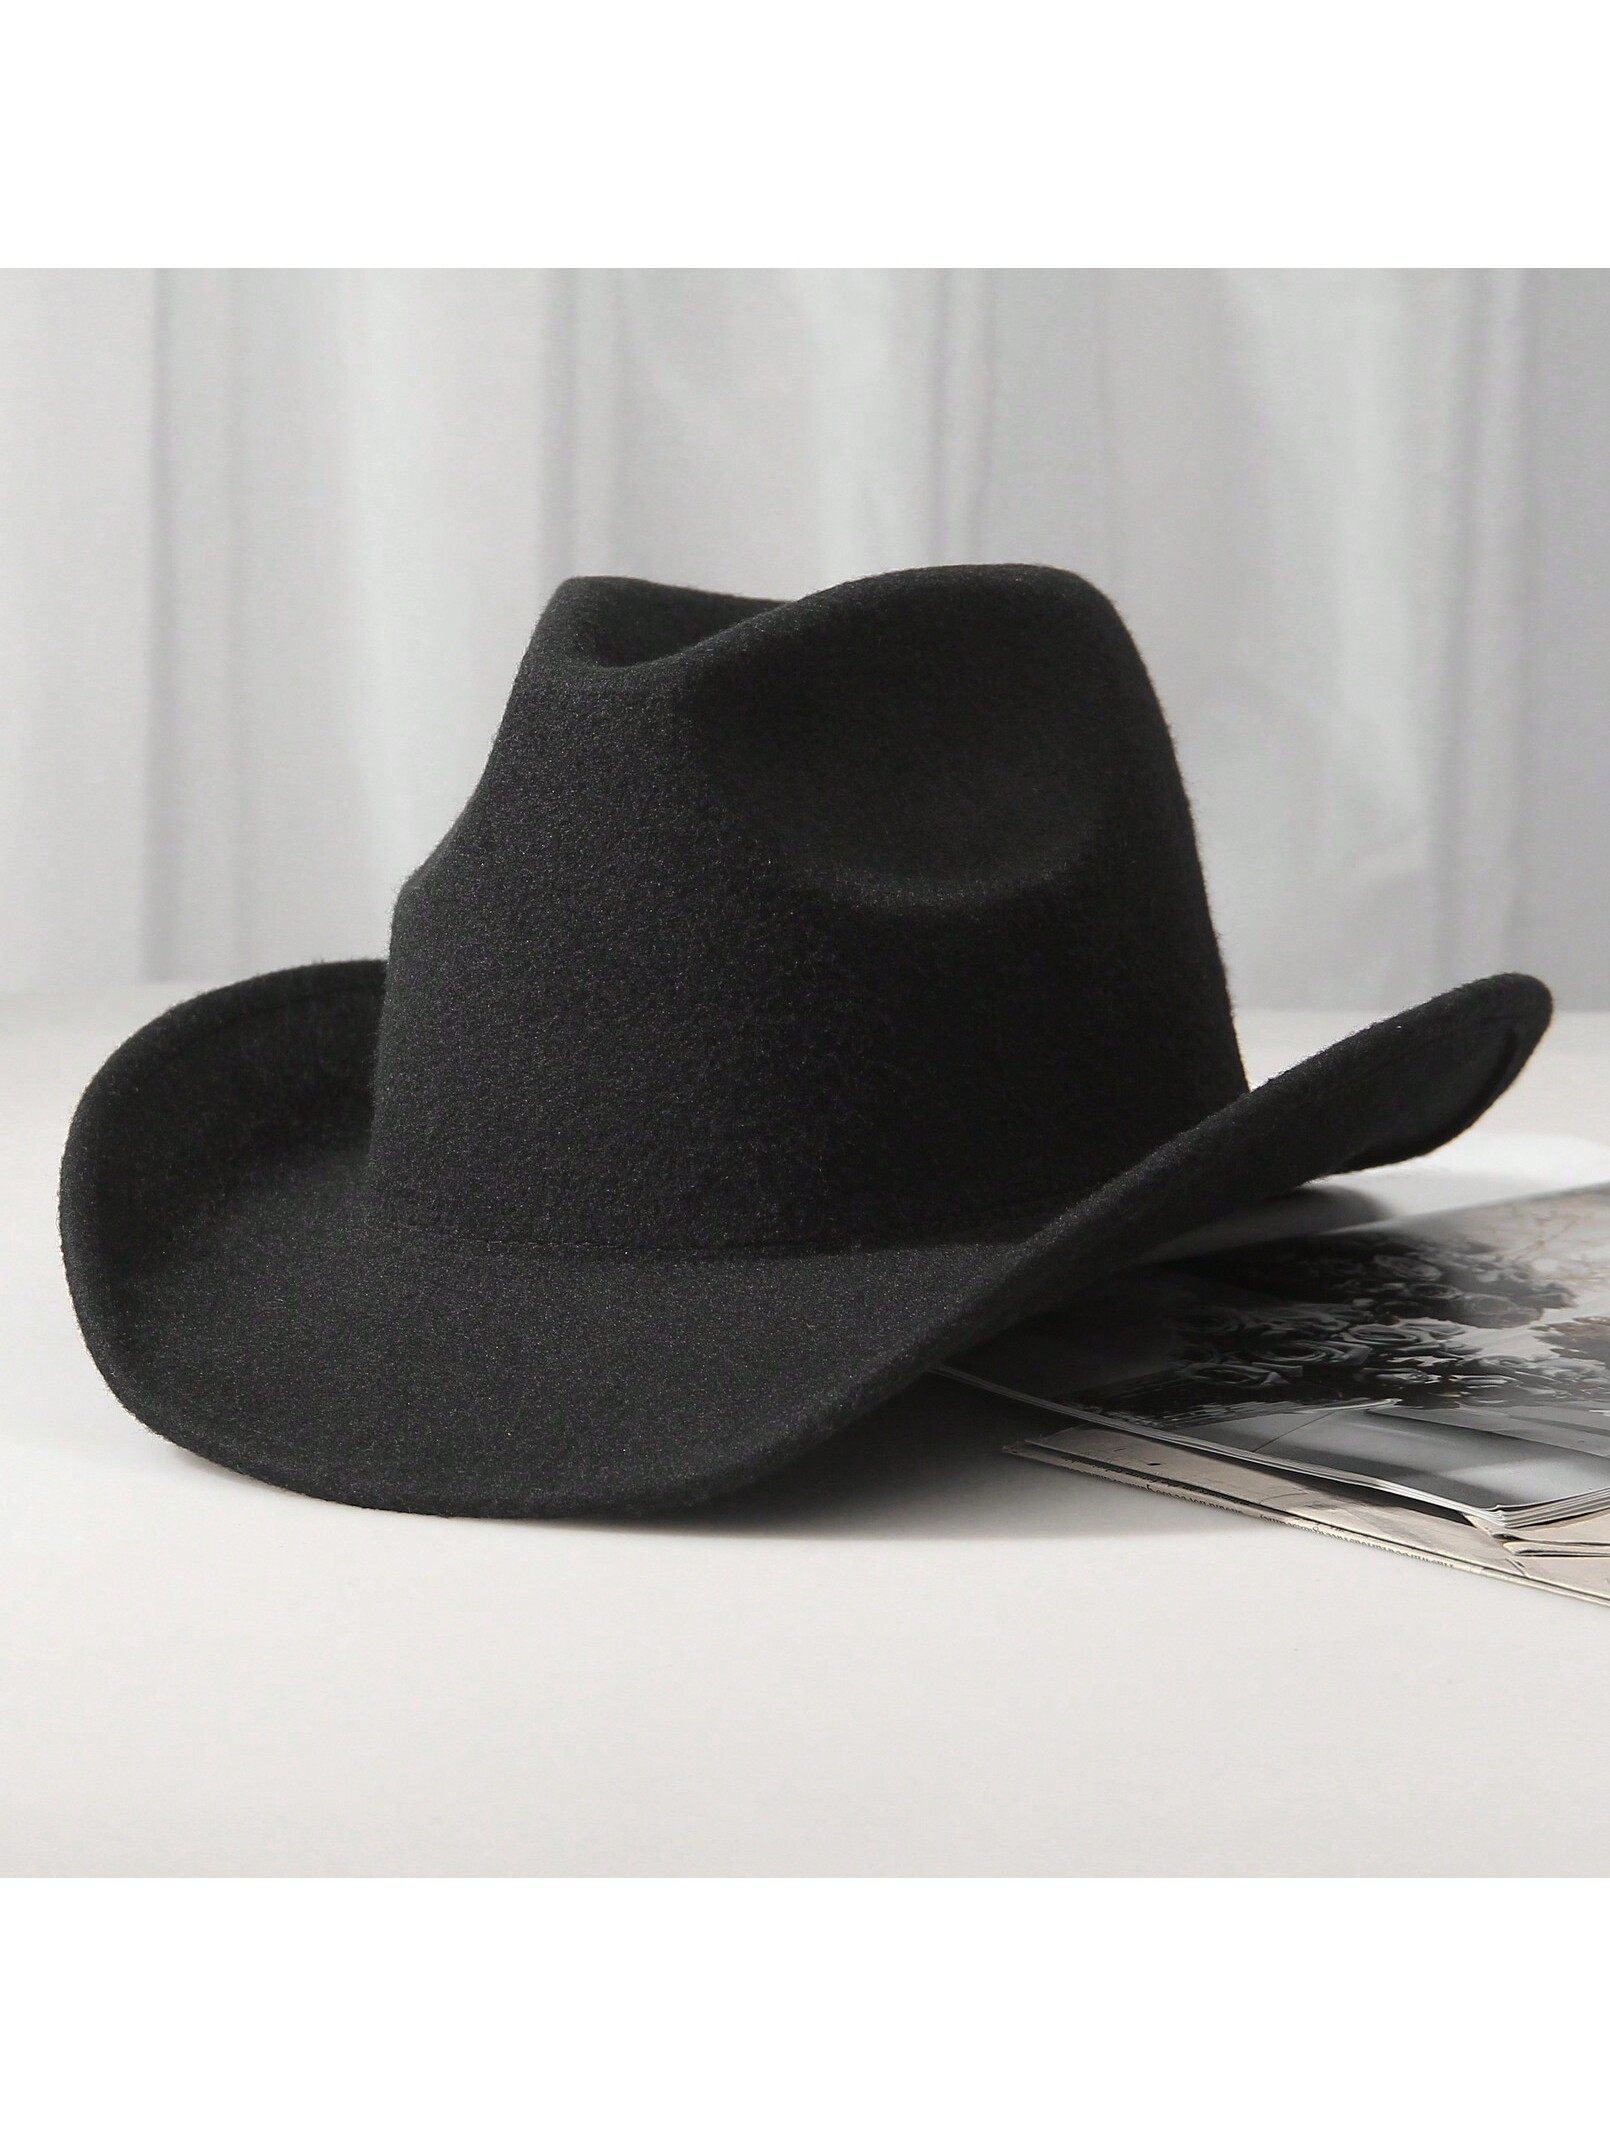 шляпа гламурная ковбойская розовая ковбой набор 2 шт 1шт унисекс шерстяная ковбойская шляпа-ковбойская шляпа в западном стиле черная ковбойская шляпа, черный